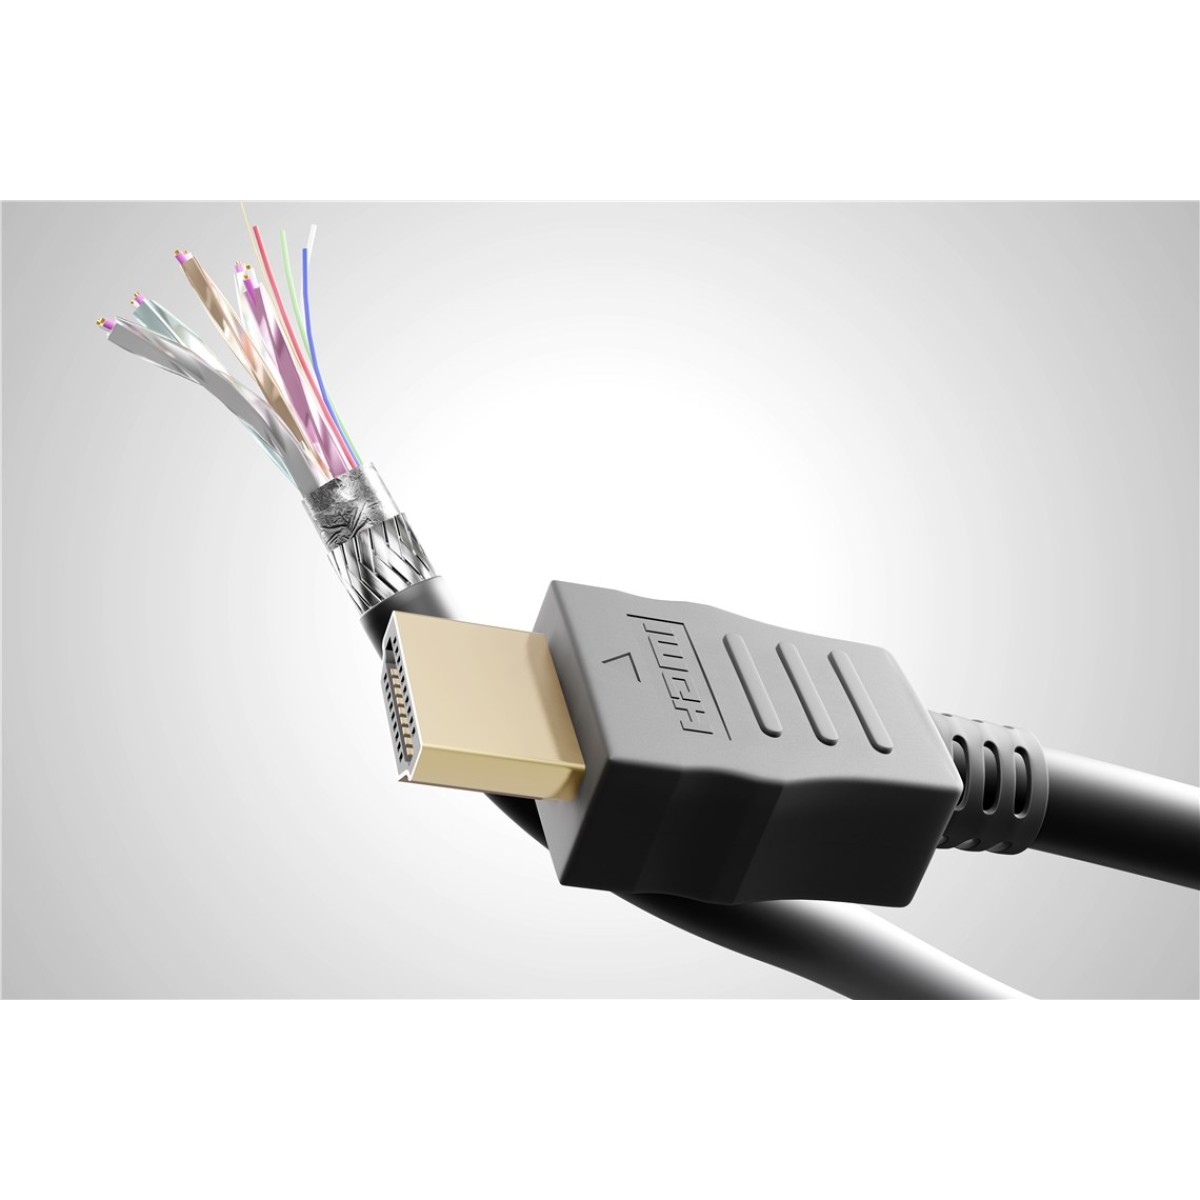 GOOBAY καλώδιο HDMI 2.0 με Ethernet 61161, 4K/60Hz, 18Gbps, 5m, μαύρο